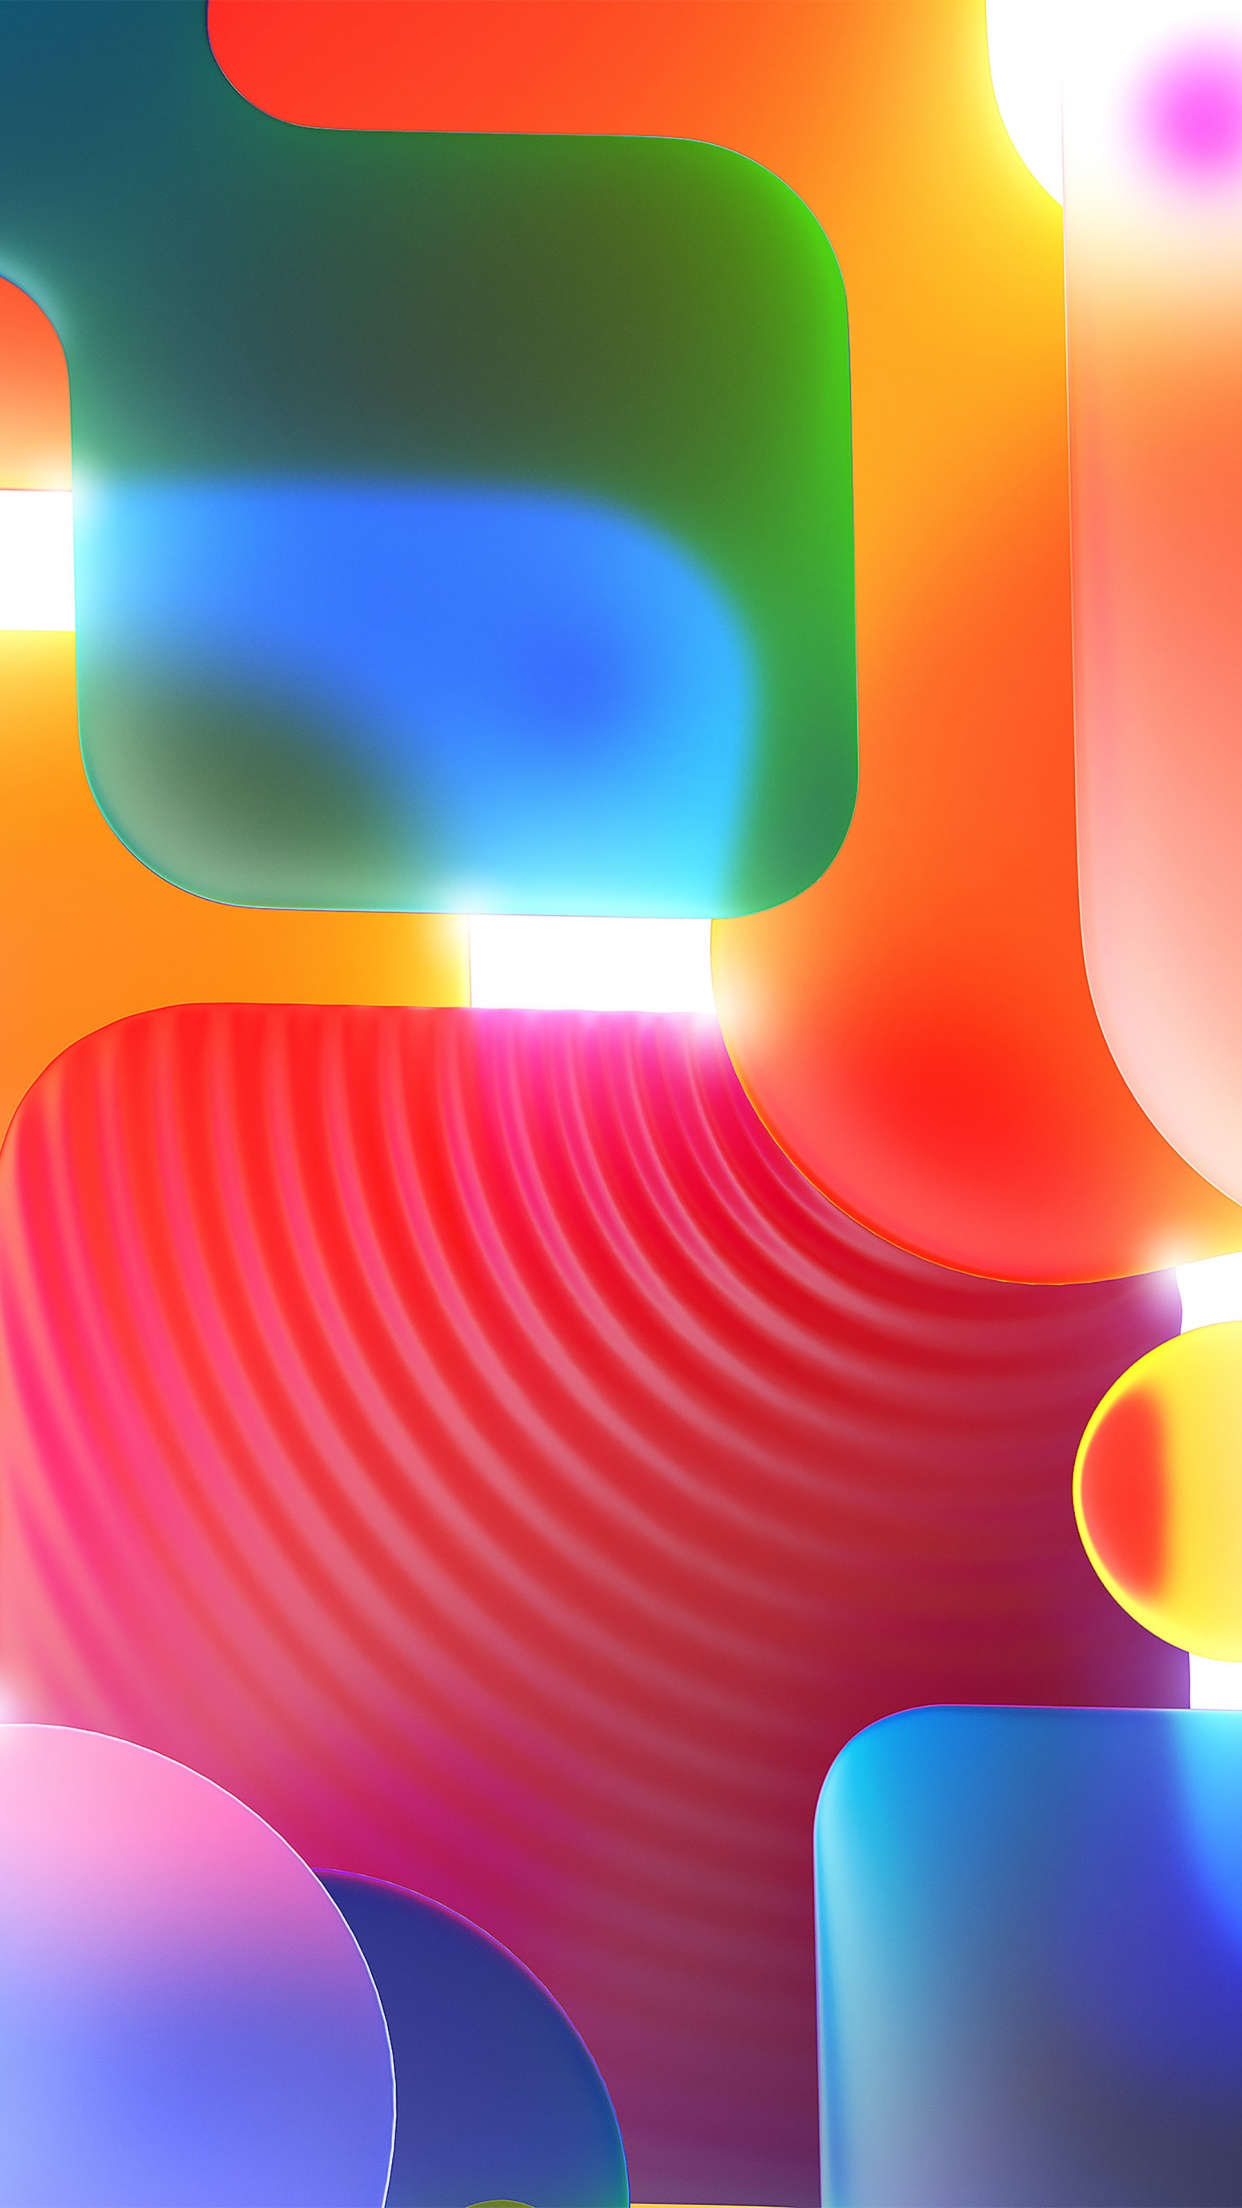 Tận hưởng sự đa dạng và độc đáo của những hình nền 4K đầy màu sắc trừu tượng. Với những hình dạng độc đáo và màu sắc sặc sỡ, bạn sẽ có những trải nghiệm thú vị và khám phá những sự kết hợp độc đáo.